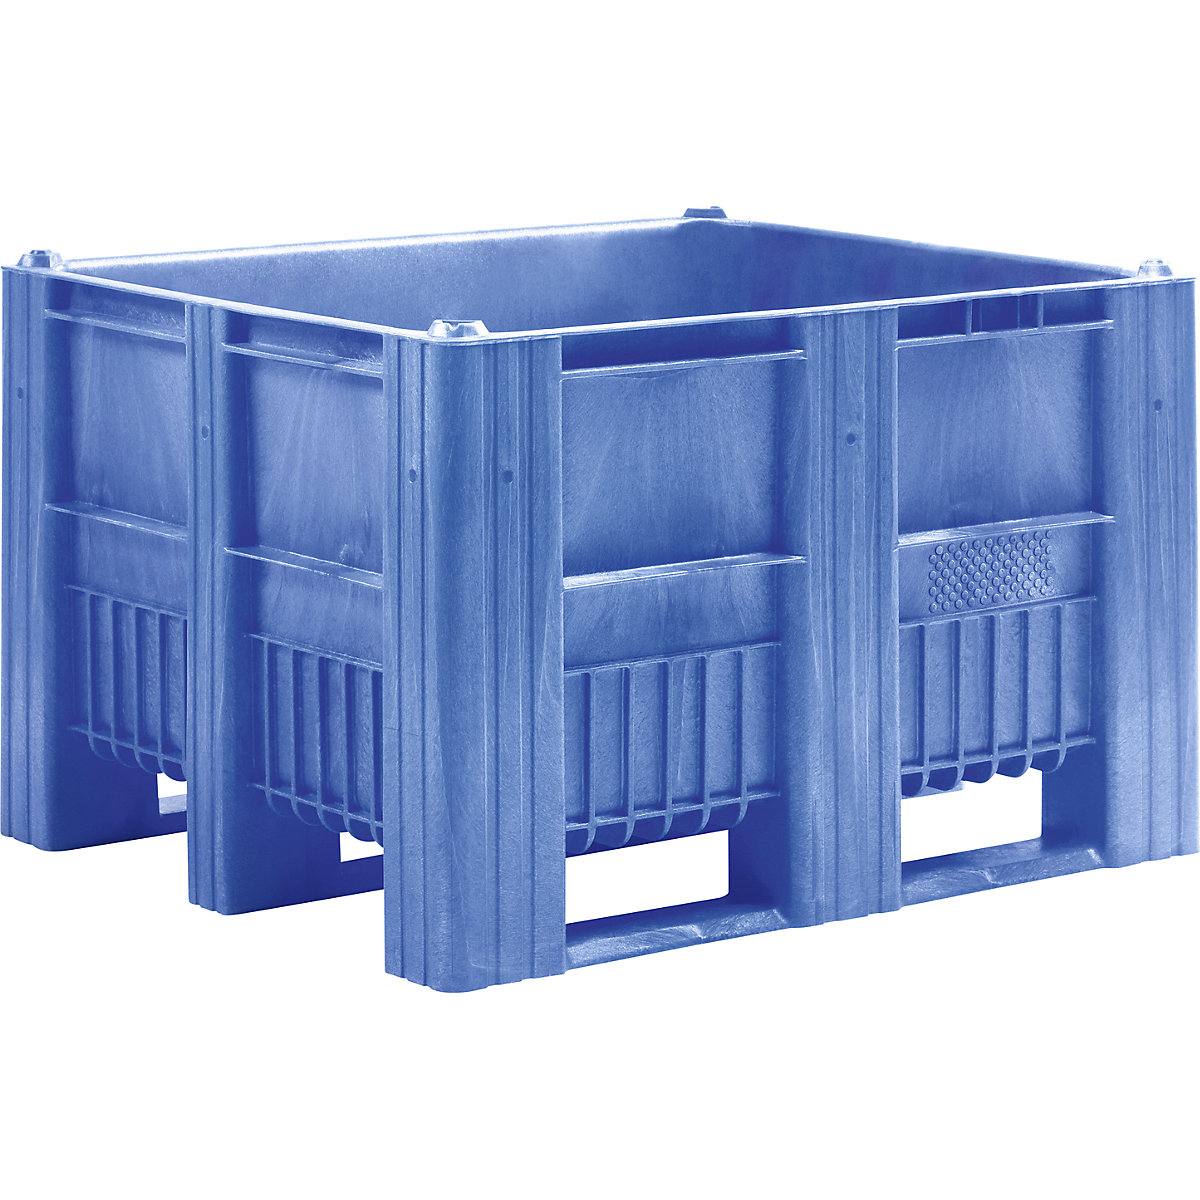 Paletový box, objem 670 l, modrý, od 6 ks